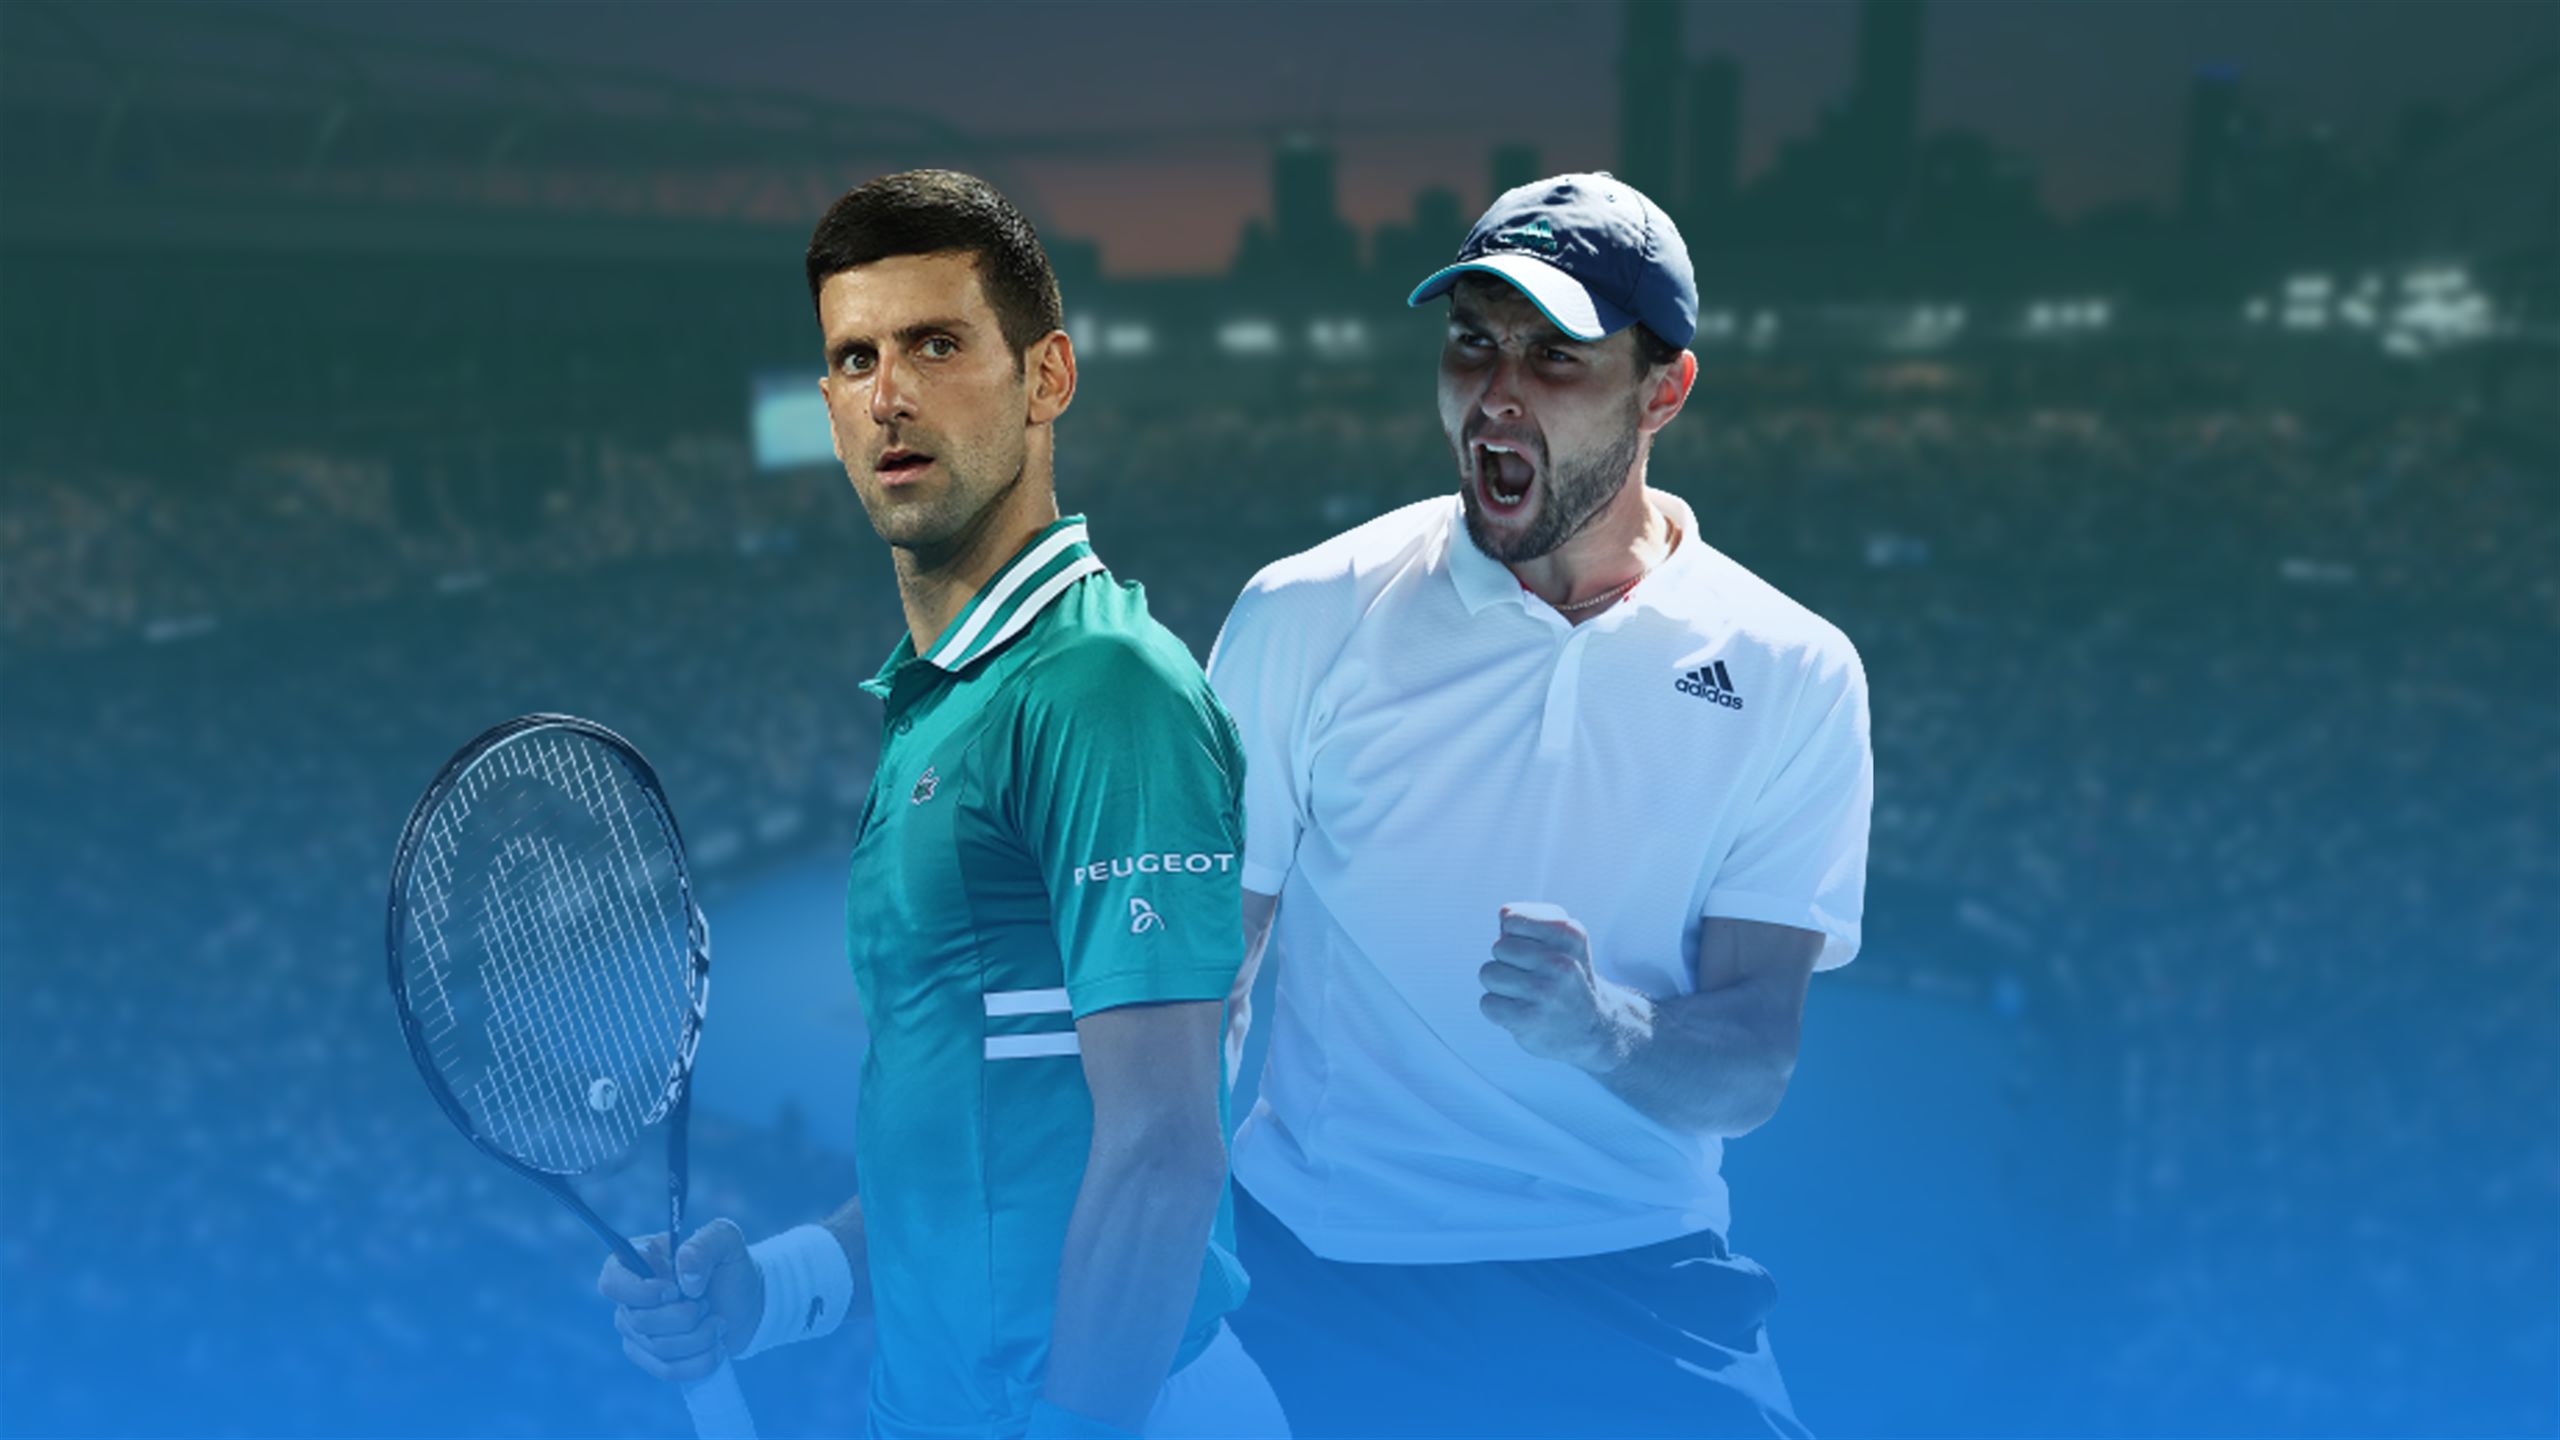 Sombreado negocio Tierras altas Open de Australia 2021 - La previa del Novak Djokovic-Aslan Karatsev -  Tenis vídeo - Eurosport